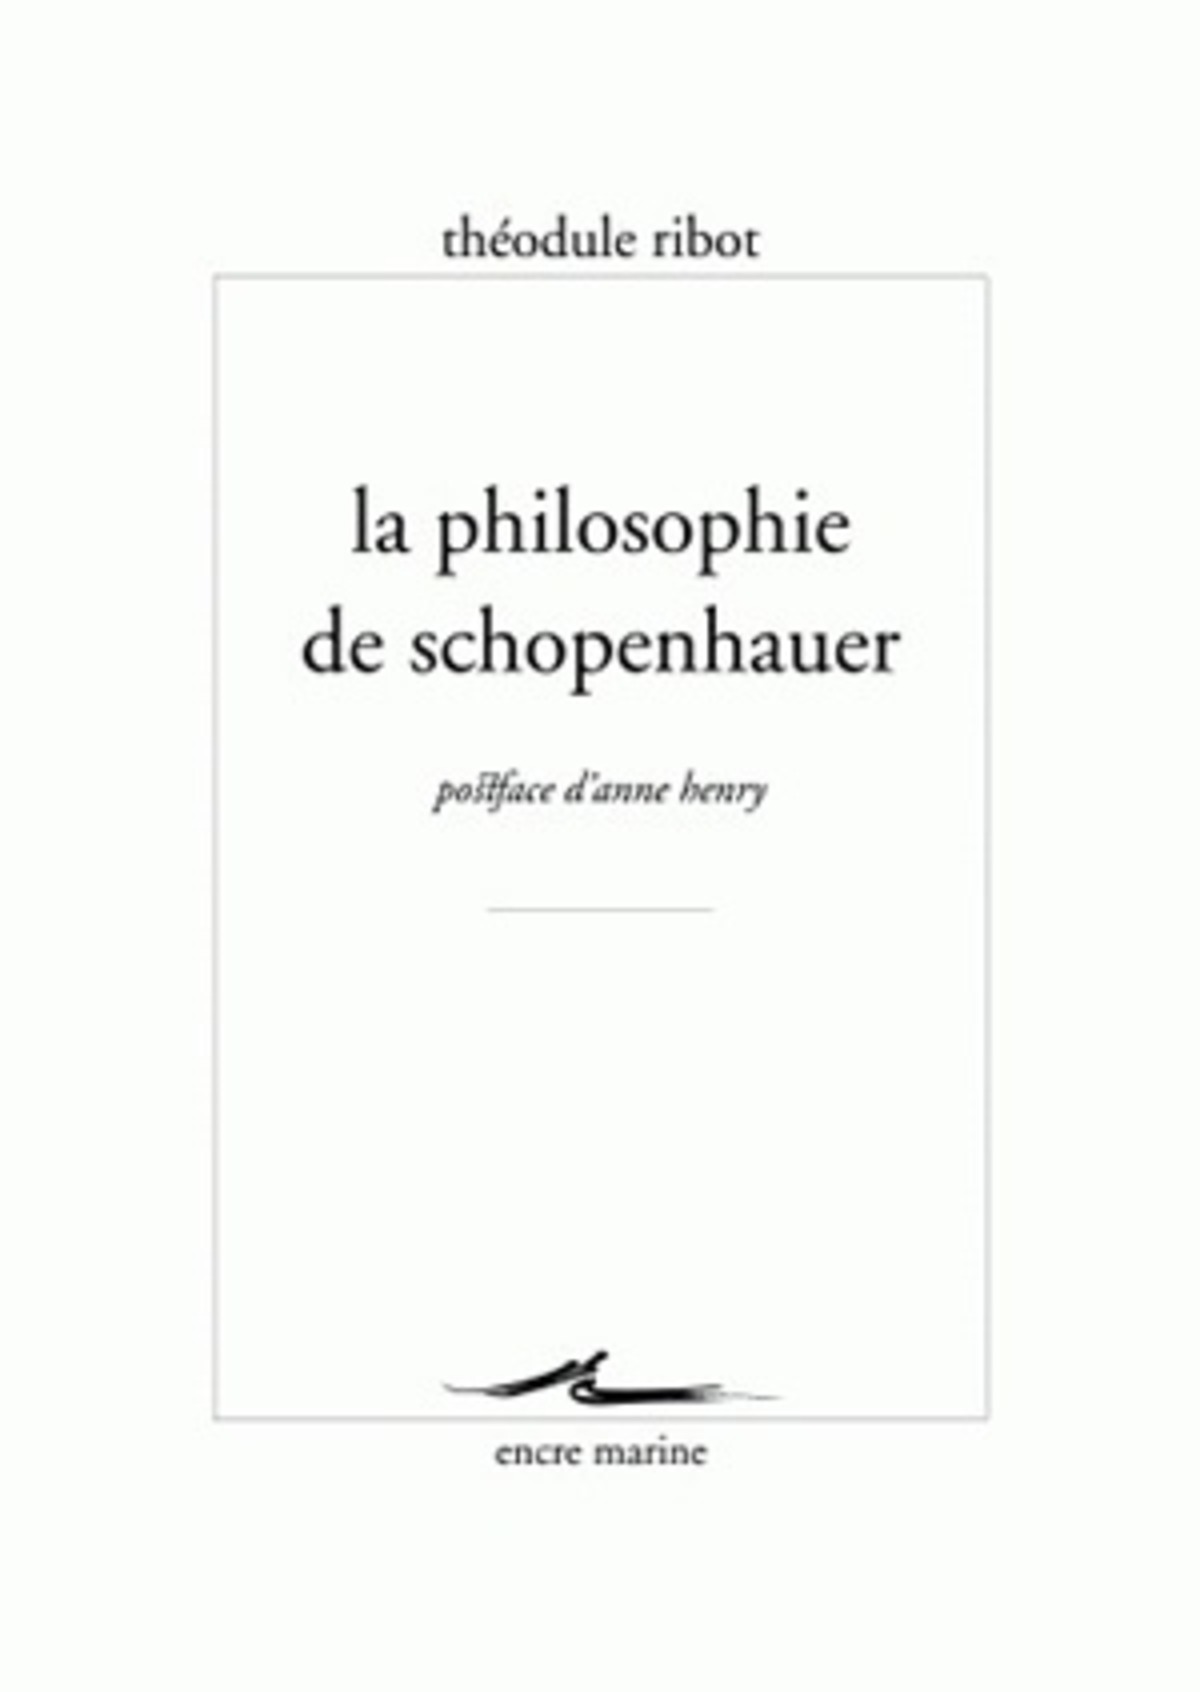 La Philosophie de Schopenhauer